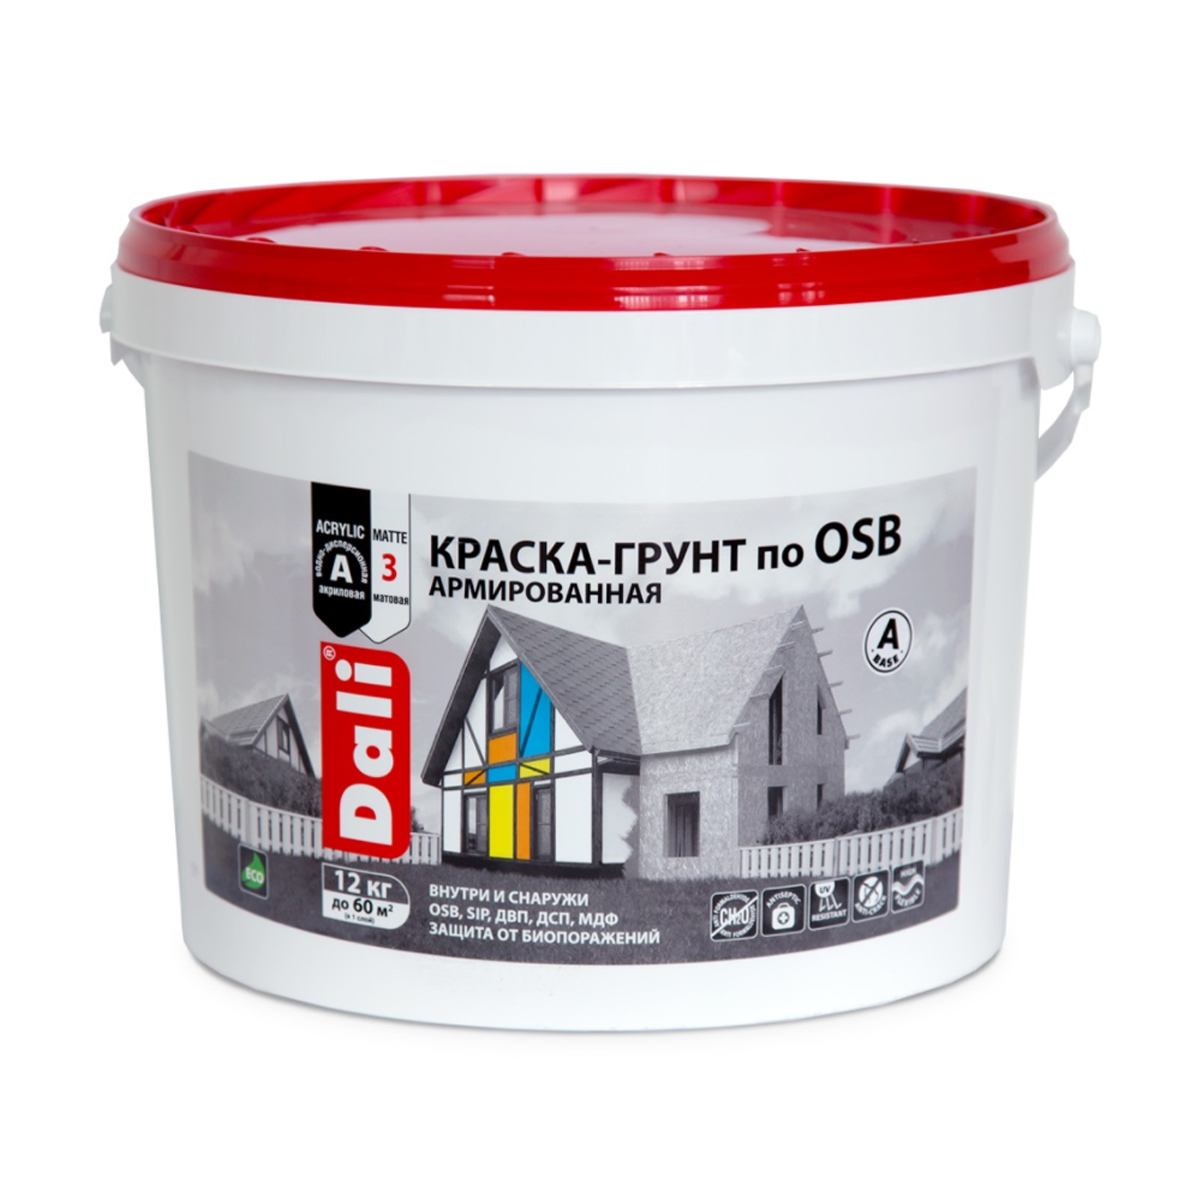 Краска-грунт по OSB Dali, армированная, матовая, база A, белая, 12 кг акриловый грунт для osb плит olimp